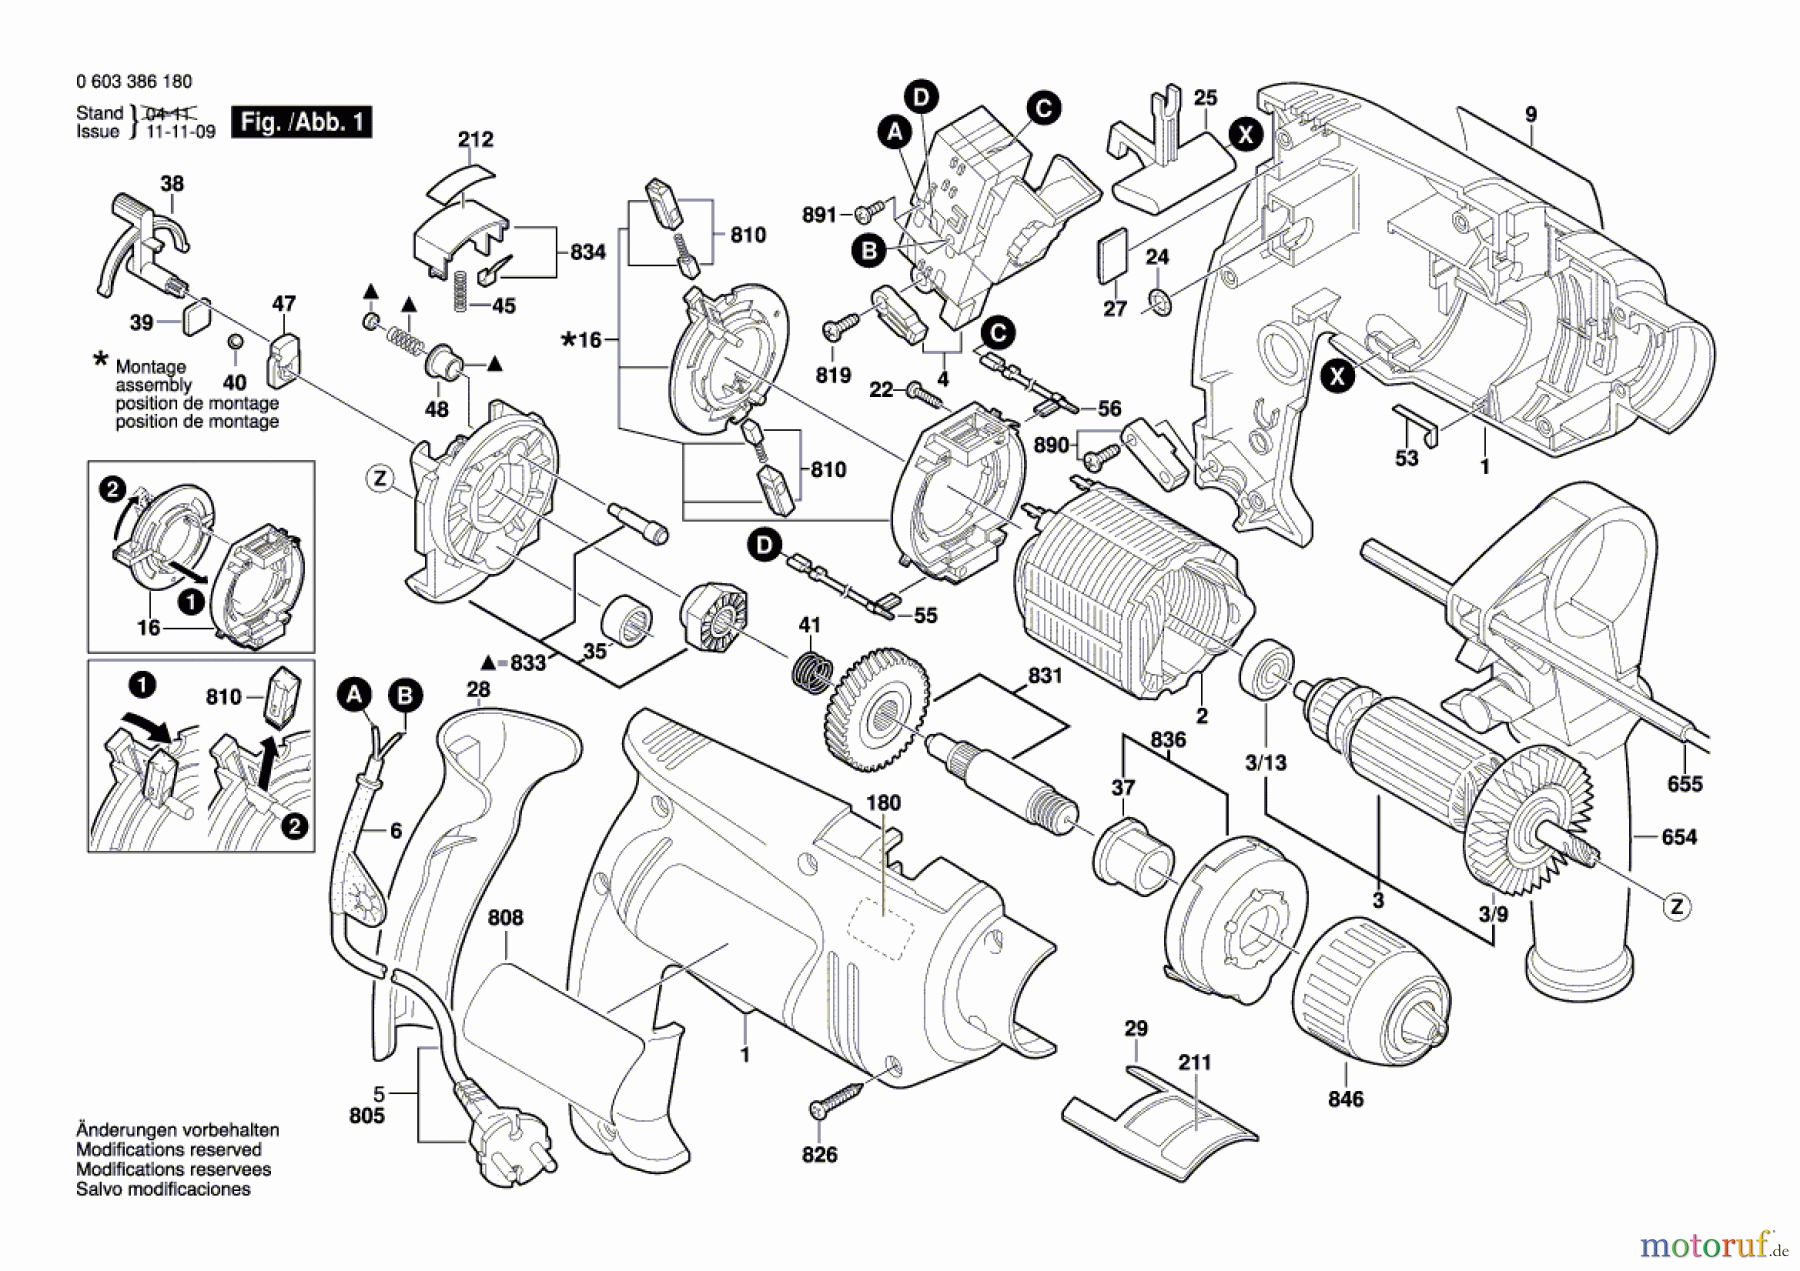  Bosch Werkzeug Schlagbohrmaschine PSB 650 RE Seite 1